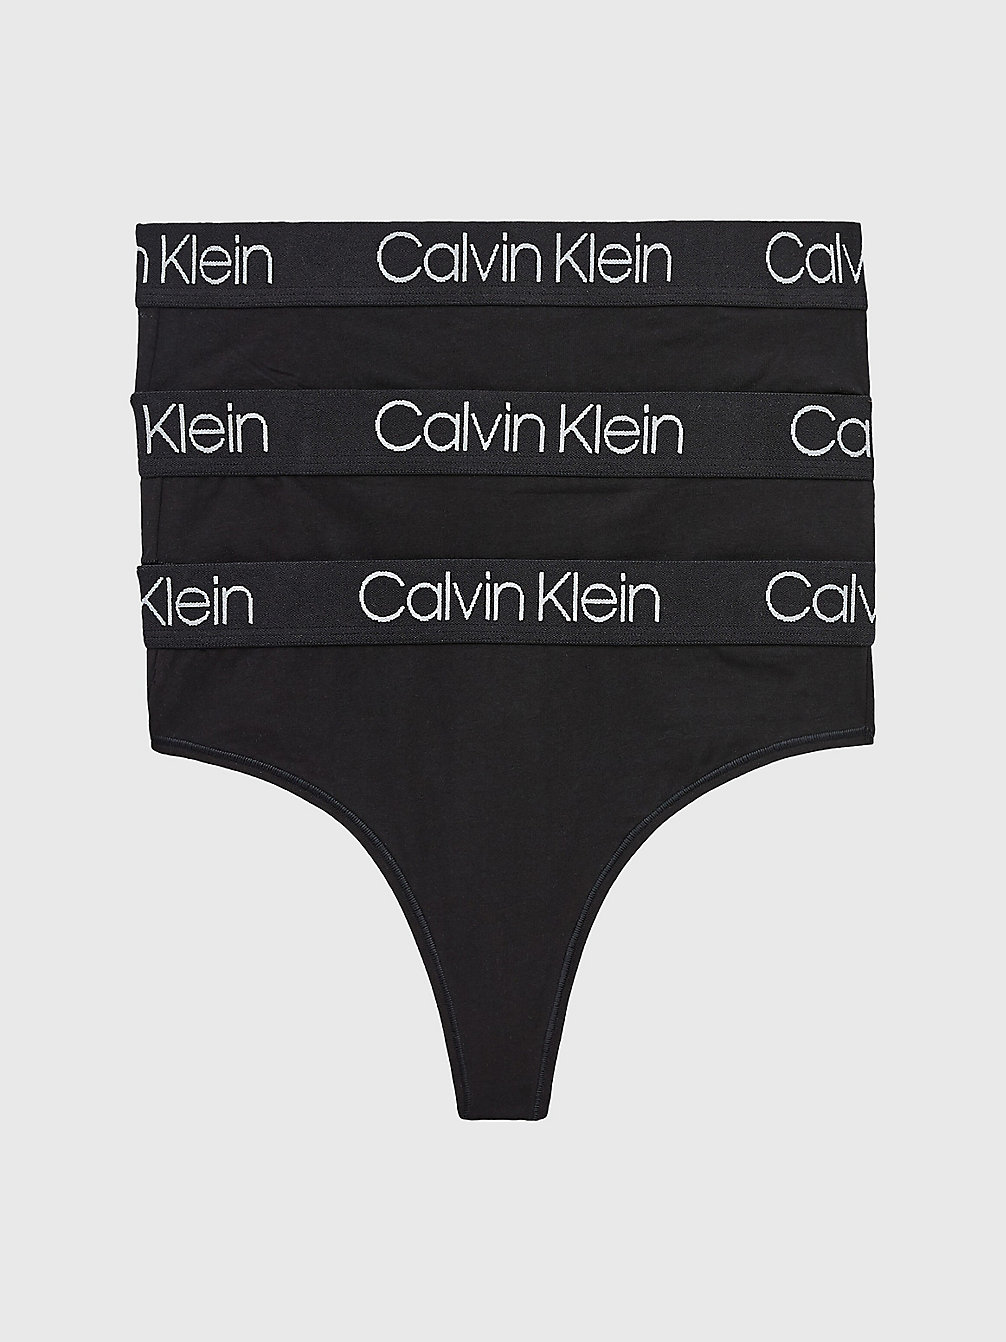 BLACK/BLACK/BLACK > 3er-Pack High-Waist-Strings - Body > undefined Damen - Calvin Klein